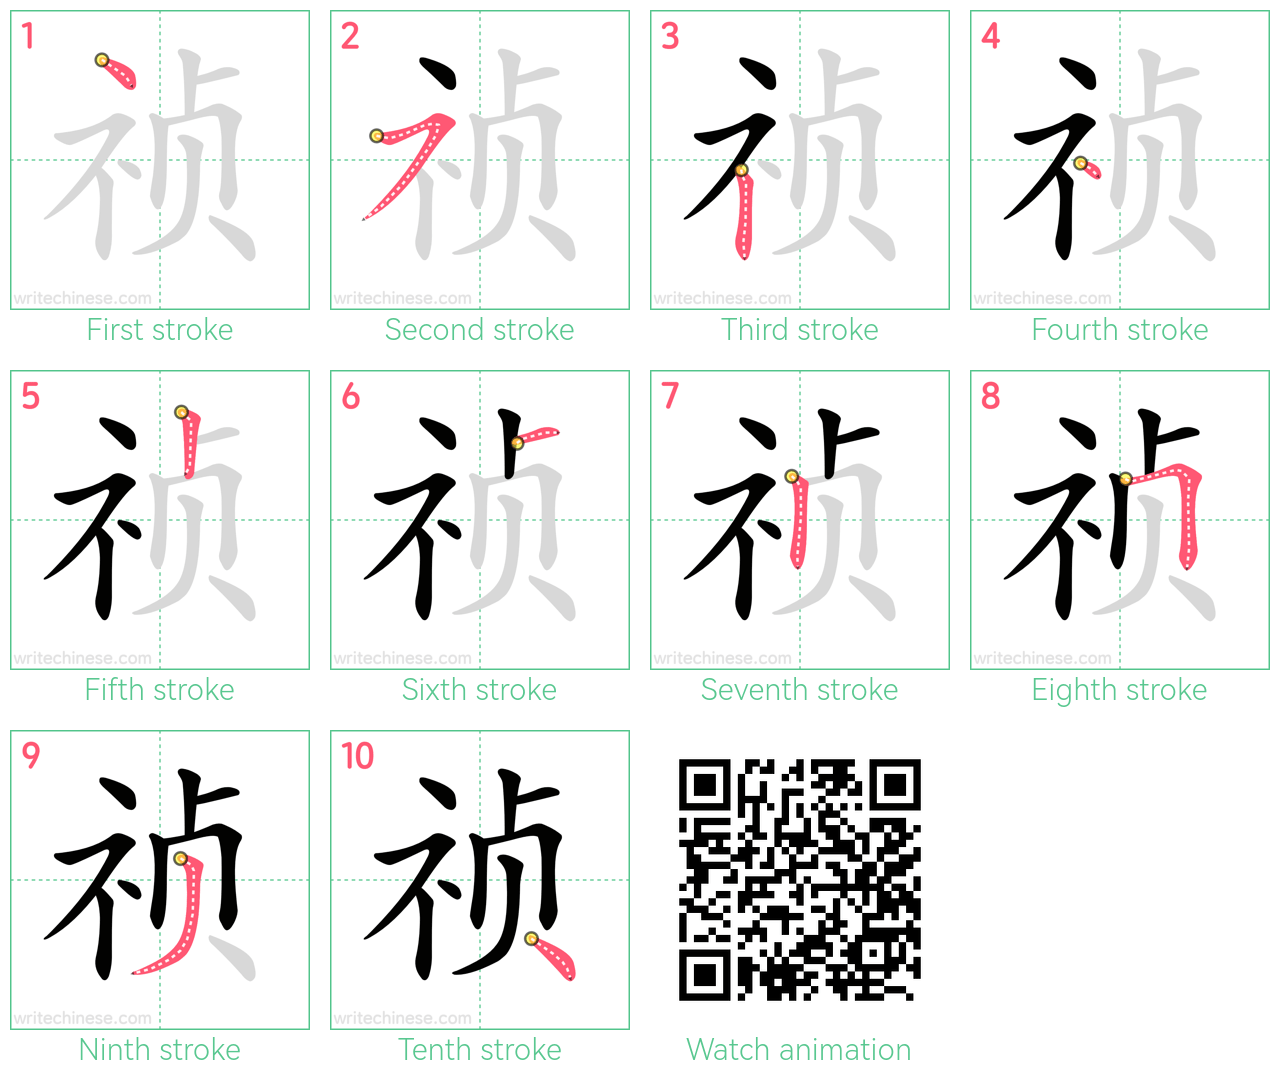 祯 step-by-step stroke order diagrams